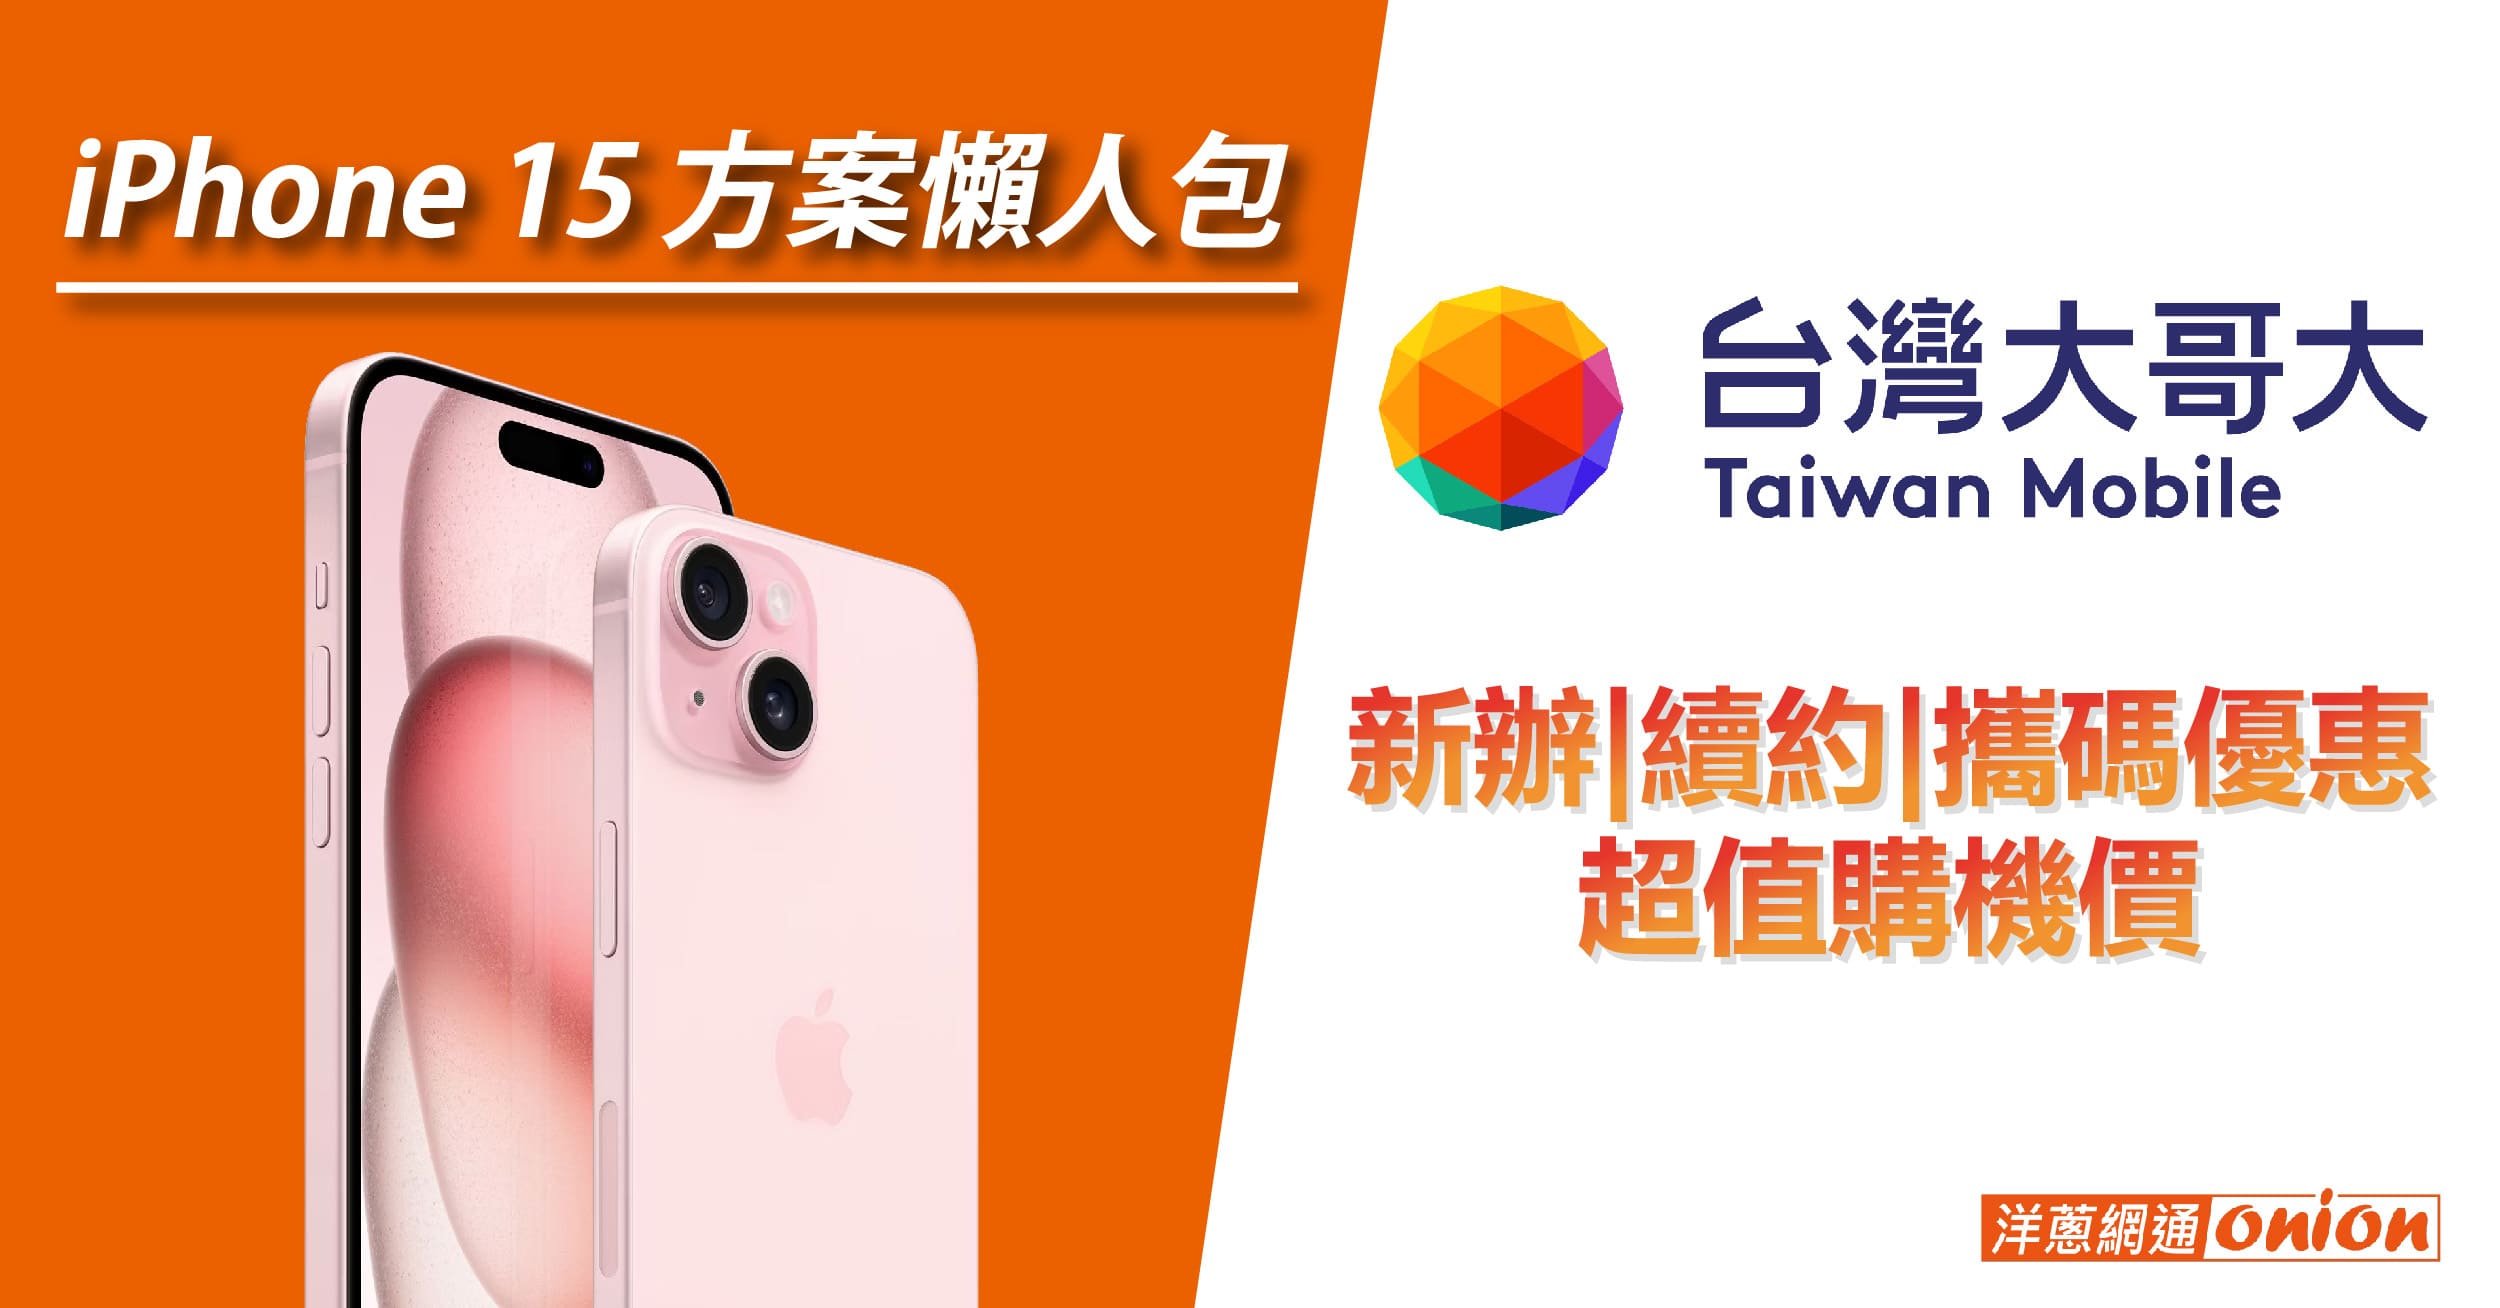 台灣大哥大 iPhone 15 方案懶人包，新辦、續約、攜碼優惠還有超值購機價